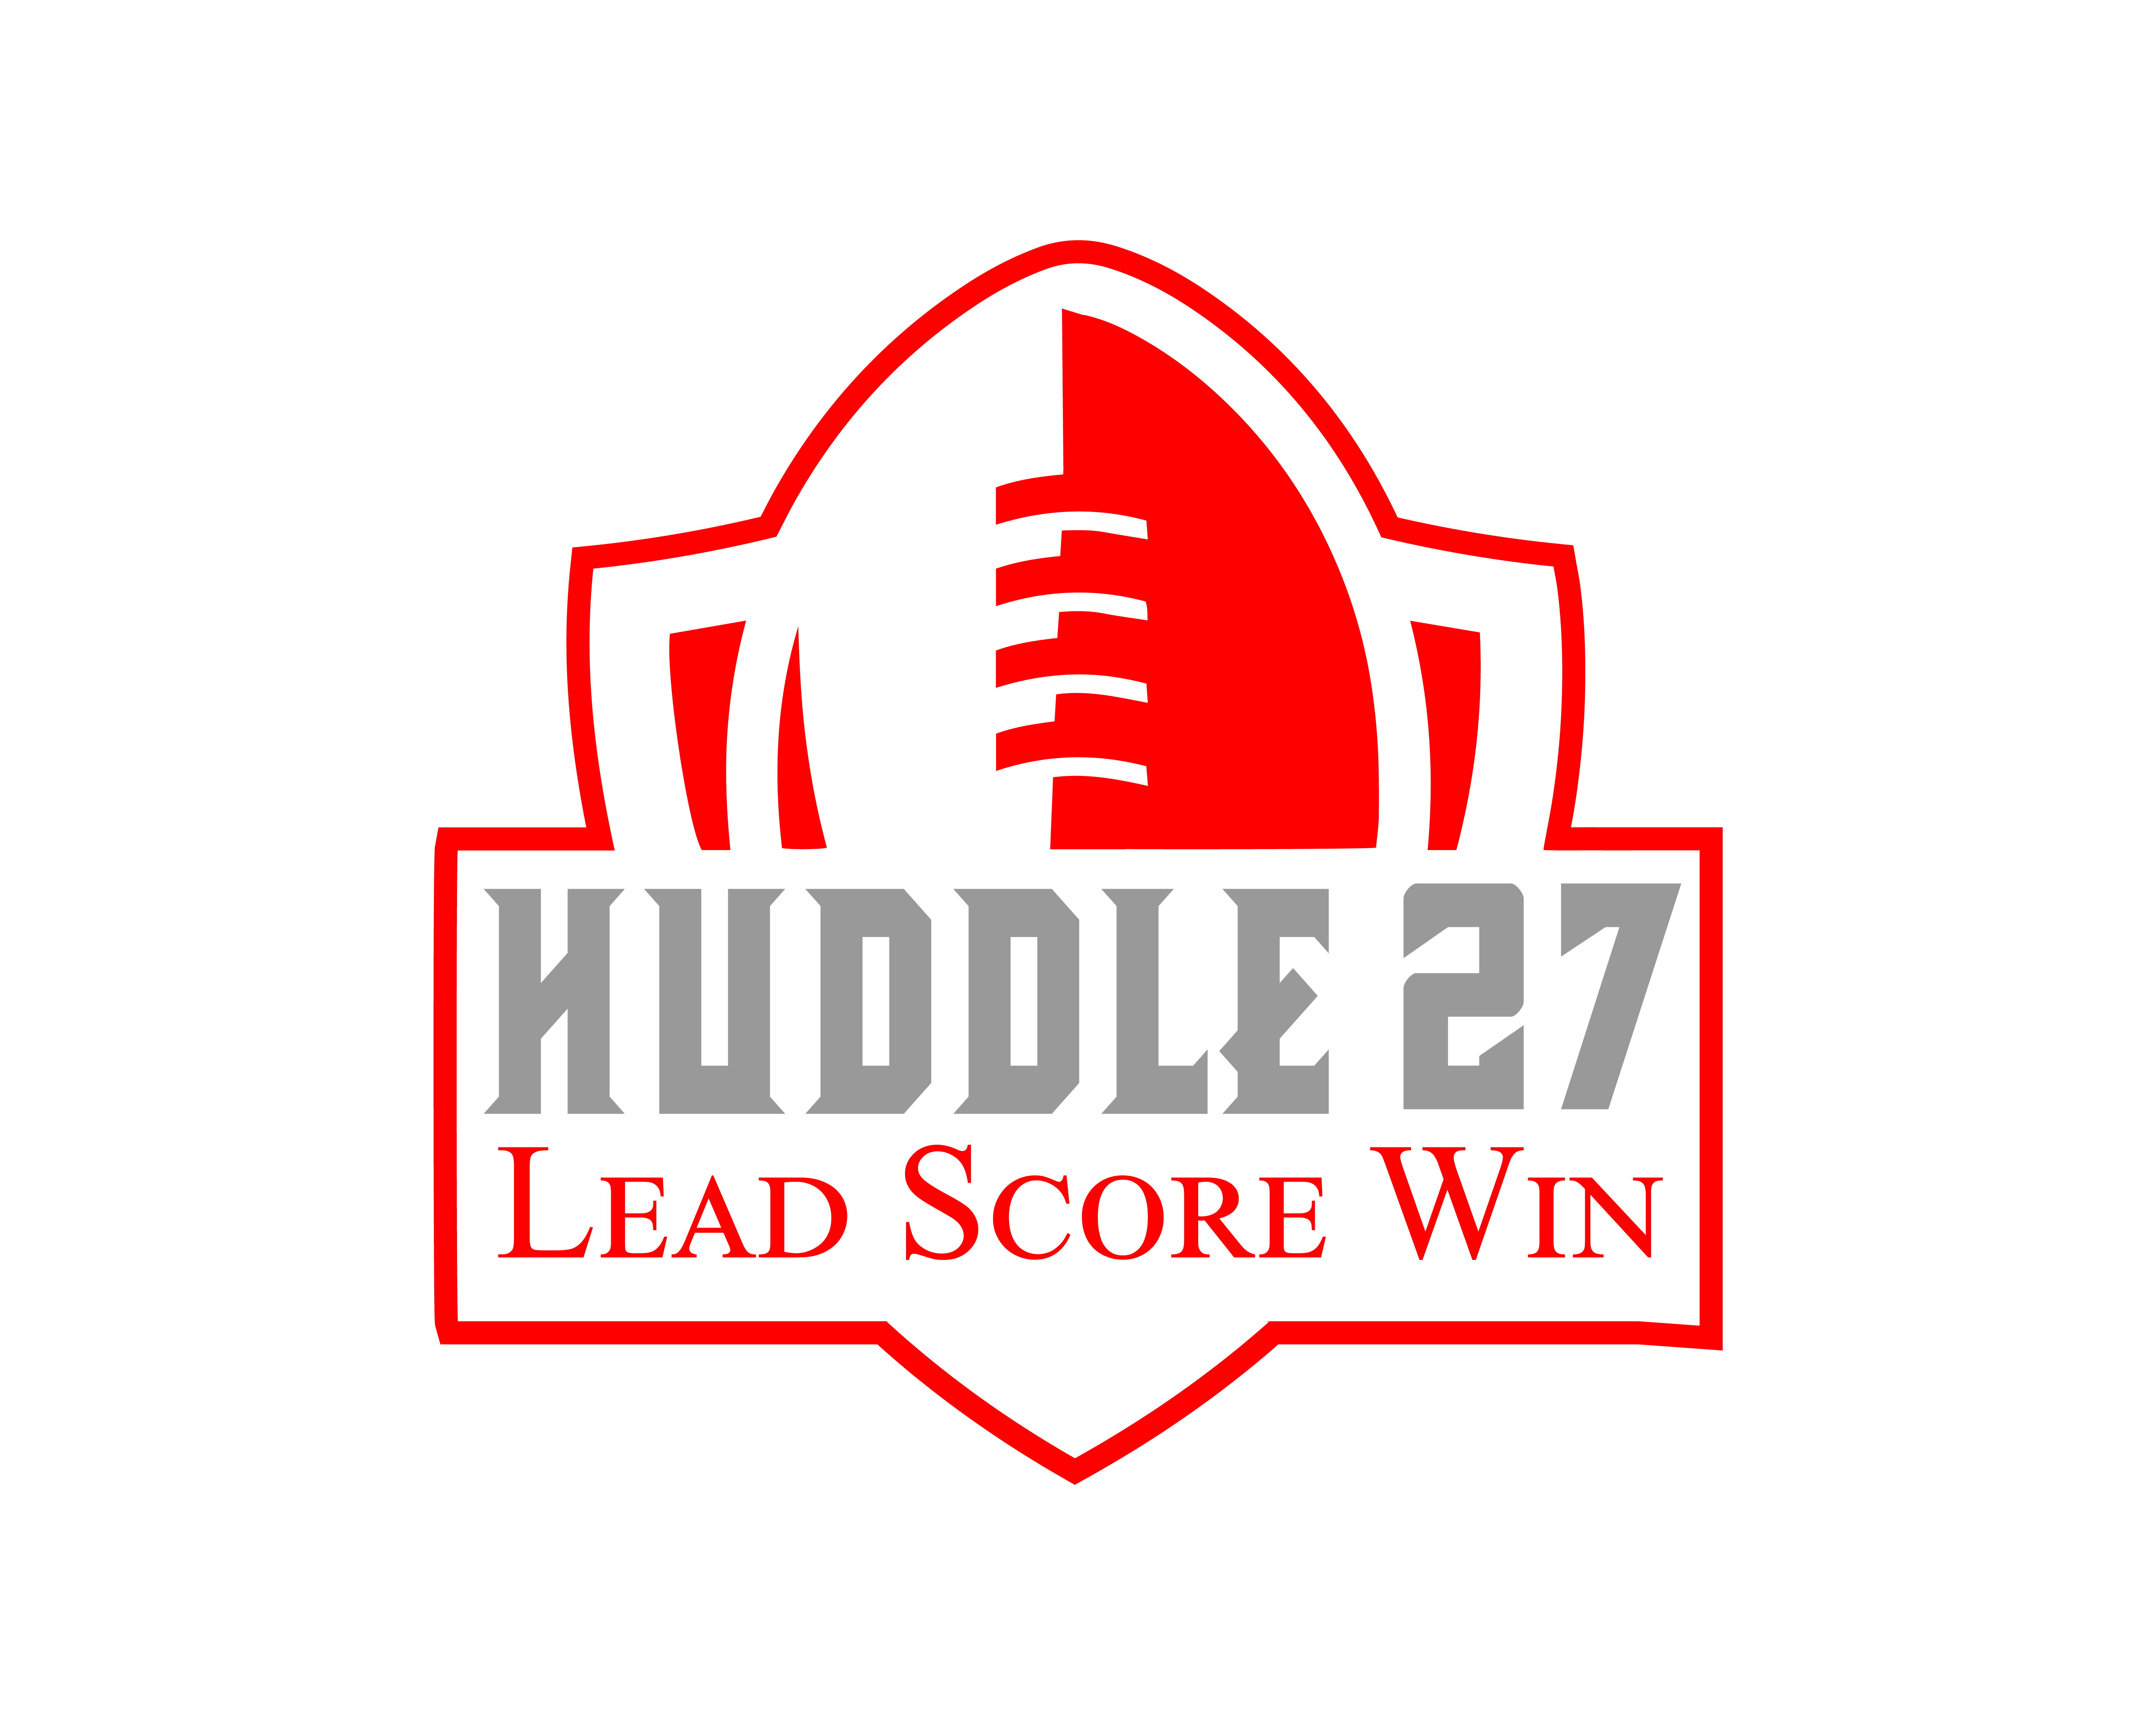 Huddle27